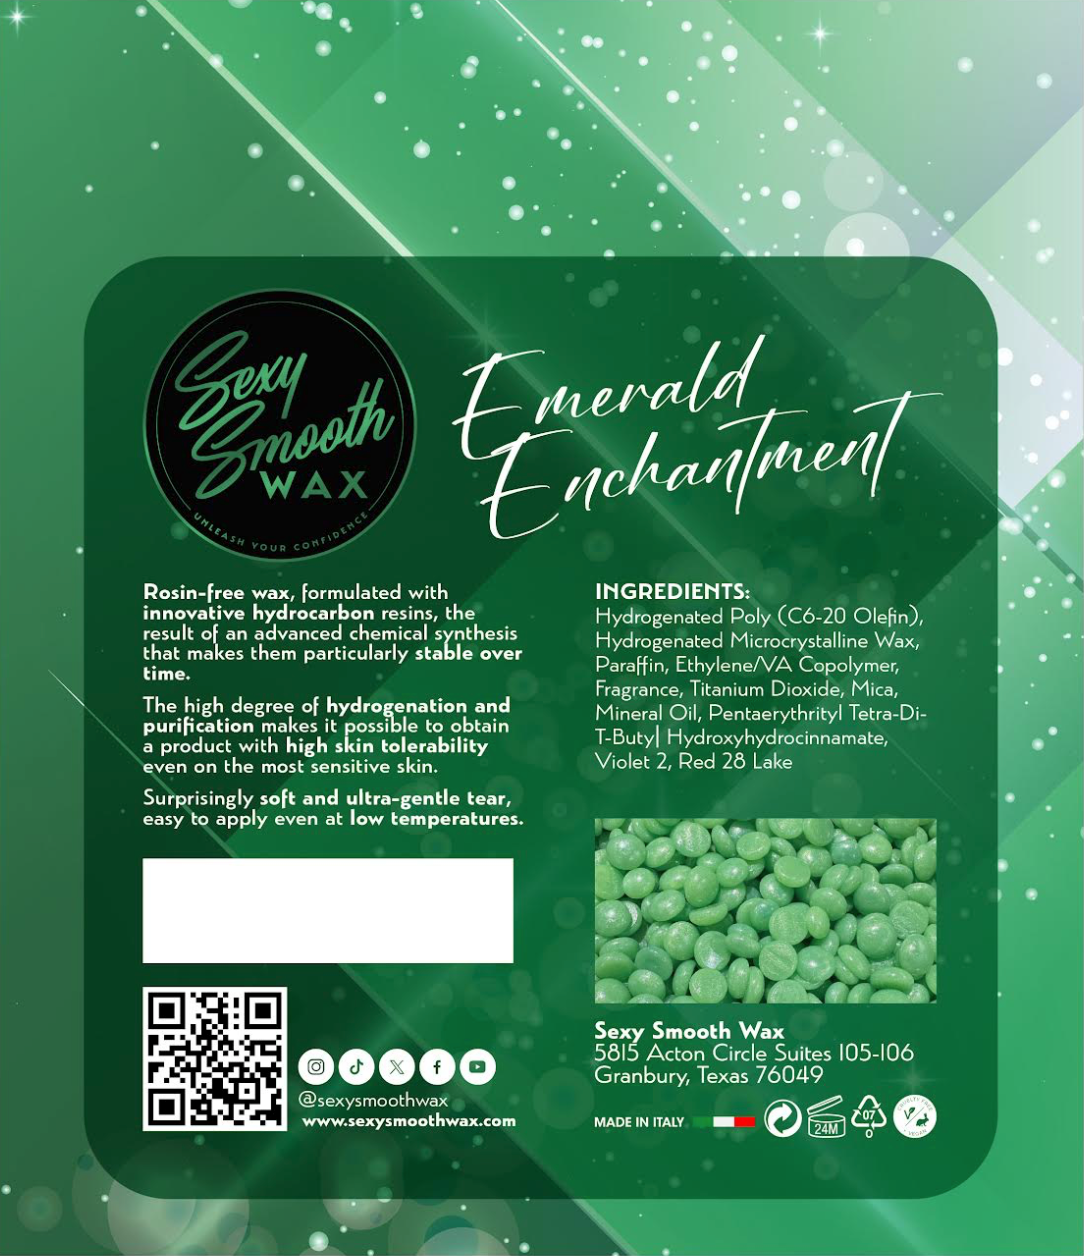 Emerald Enchantment Hard Wax